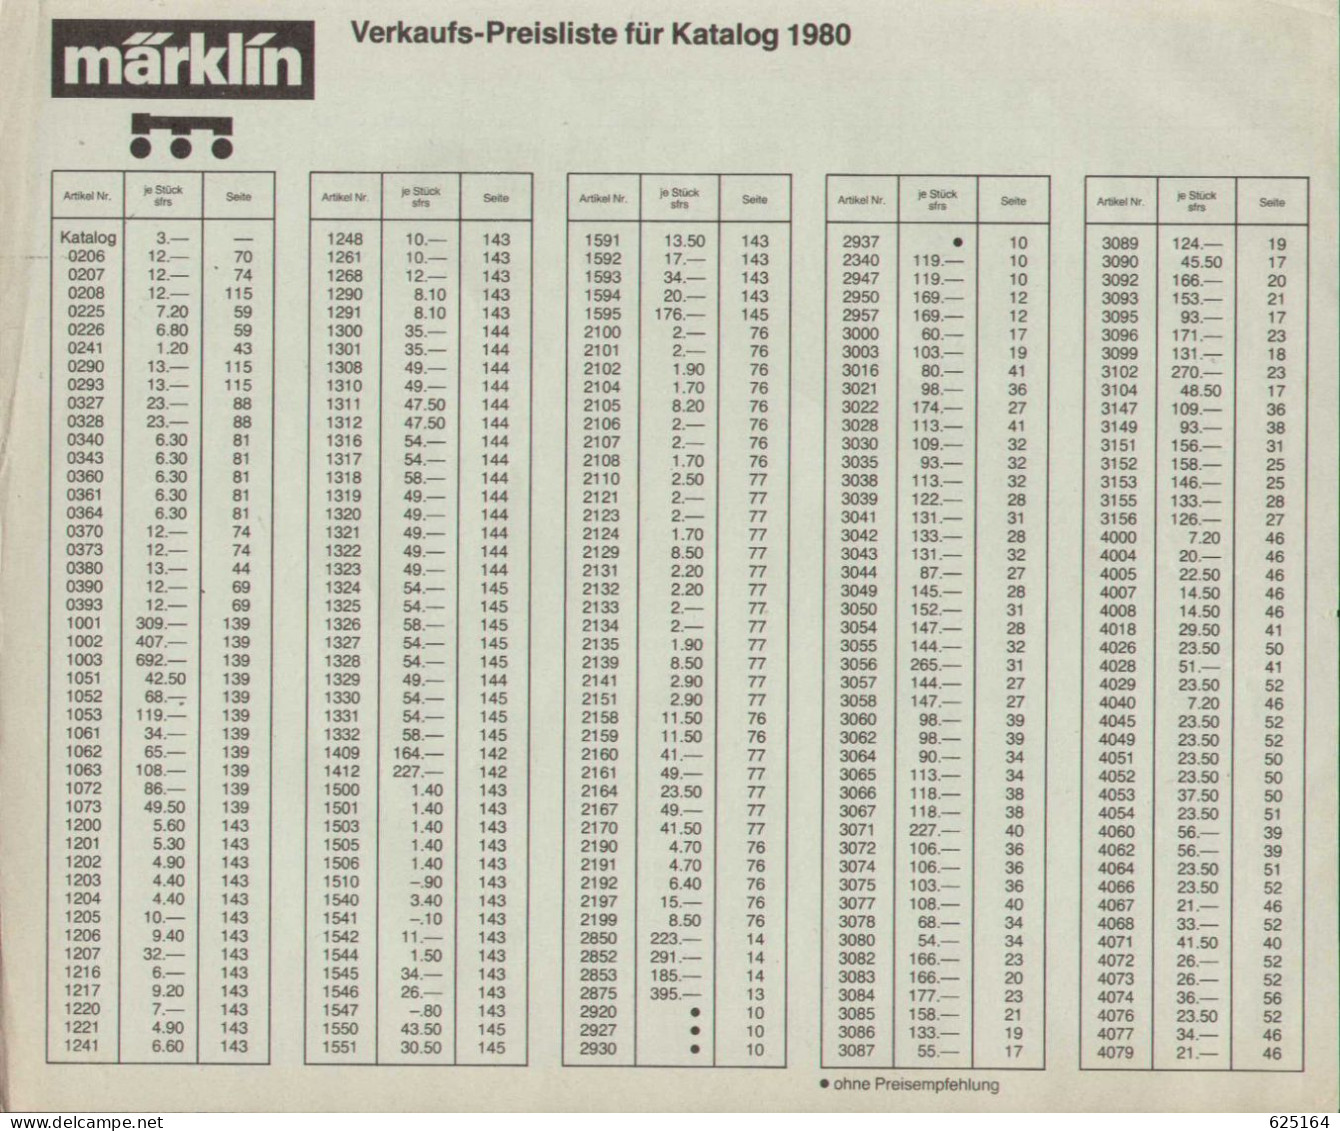 Catalogue MÄRKLIN 1980 ONLY PREISLISTE CHF - German